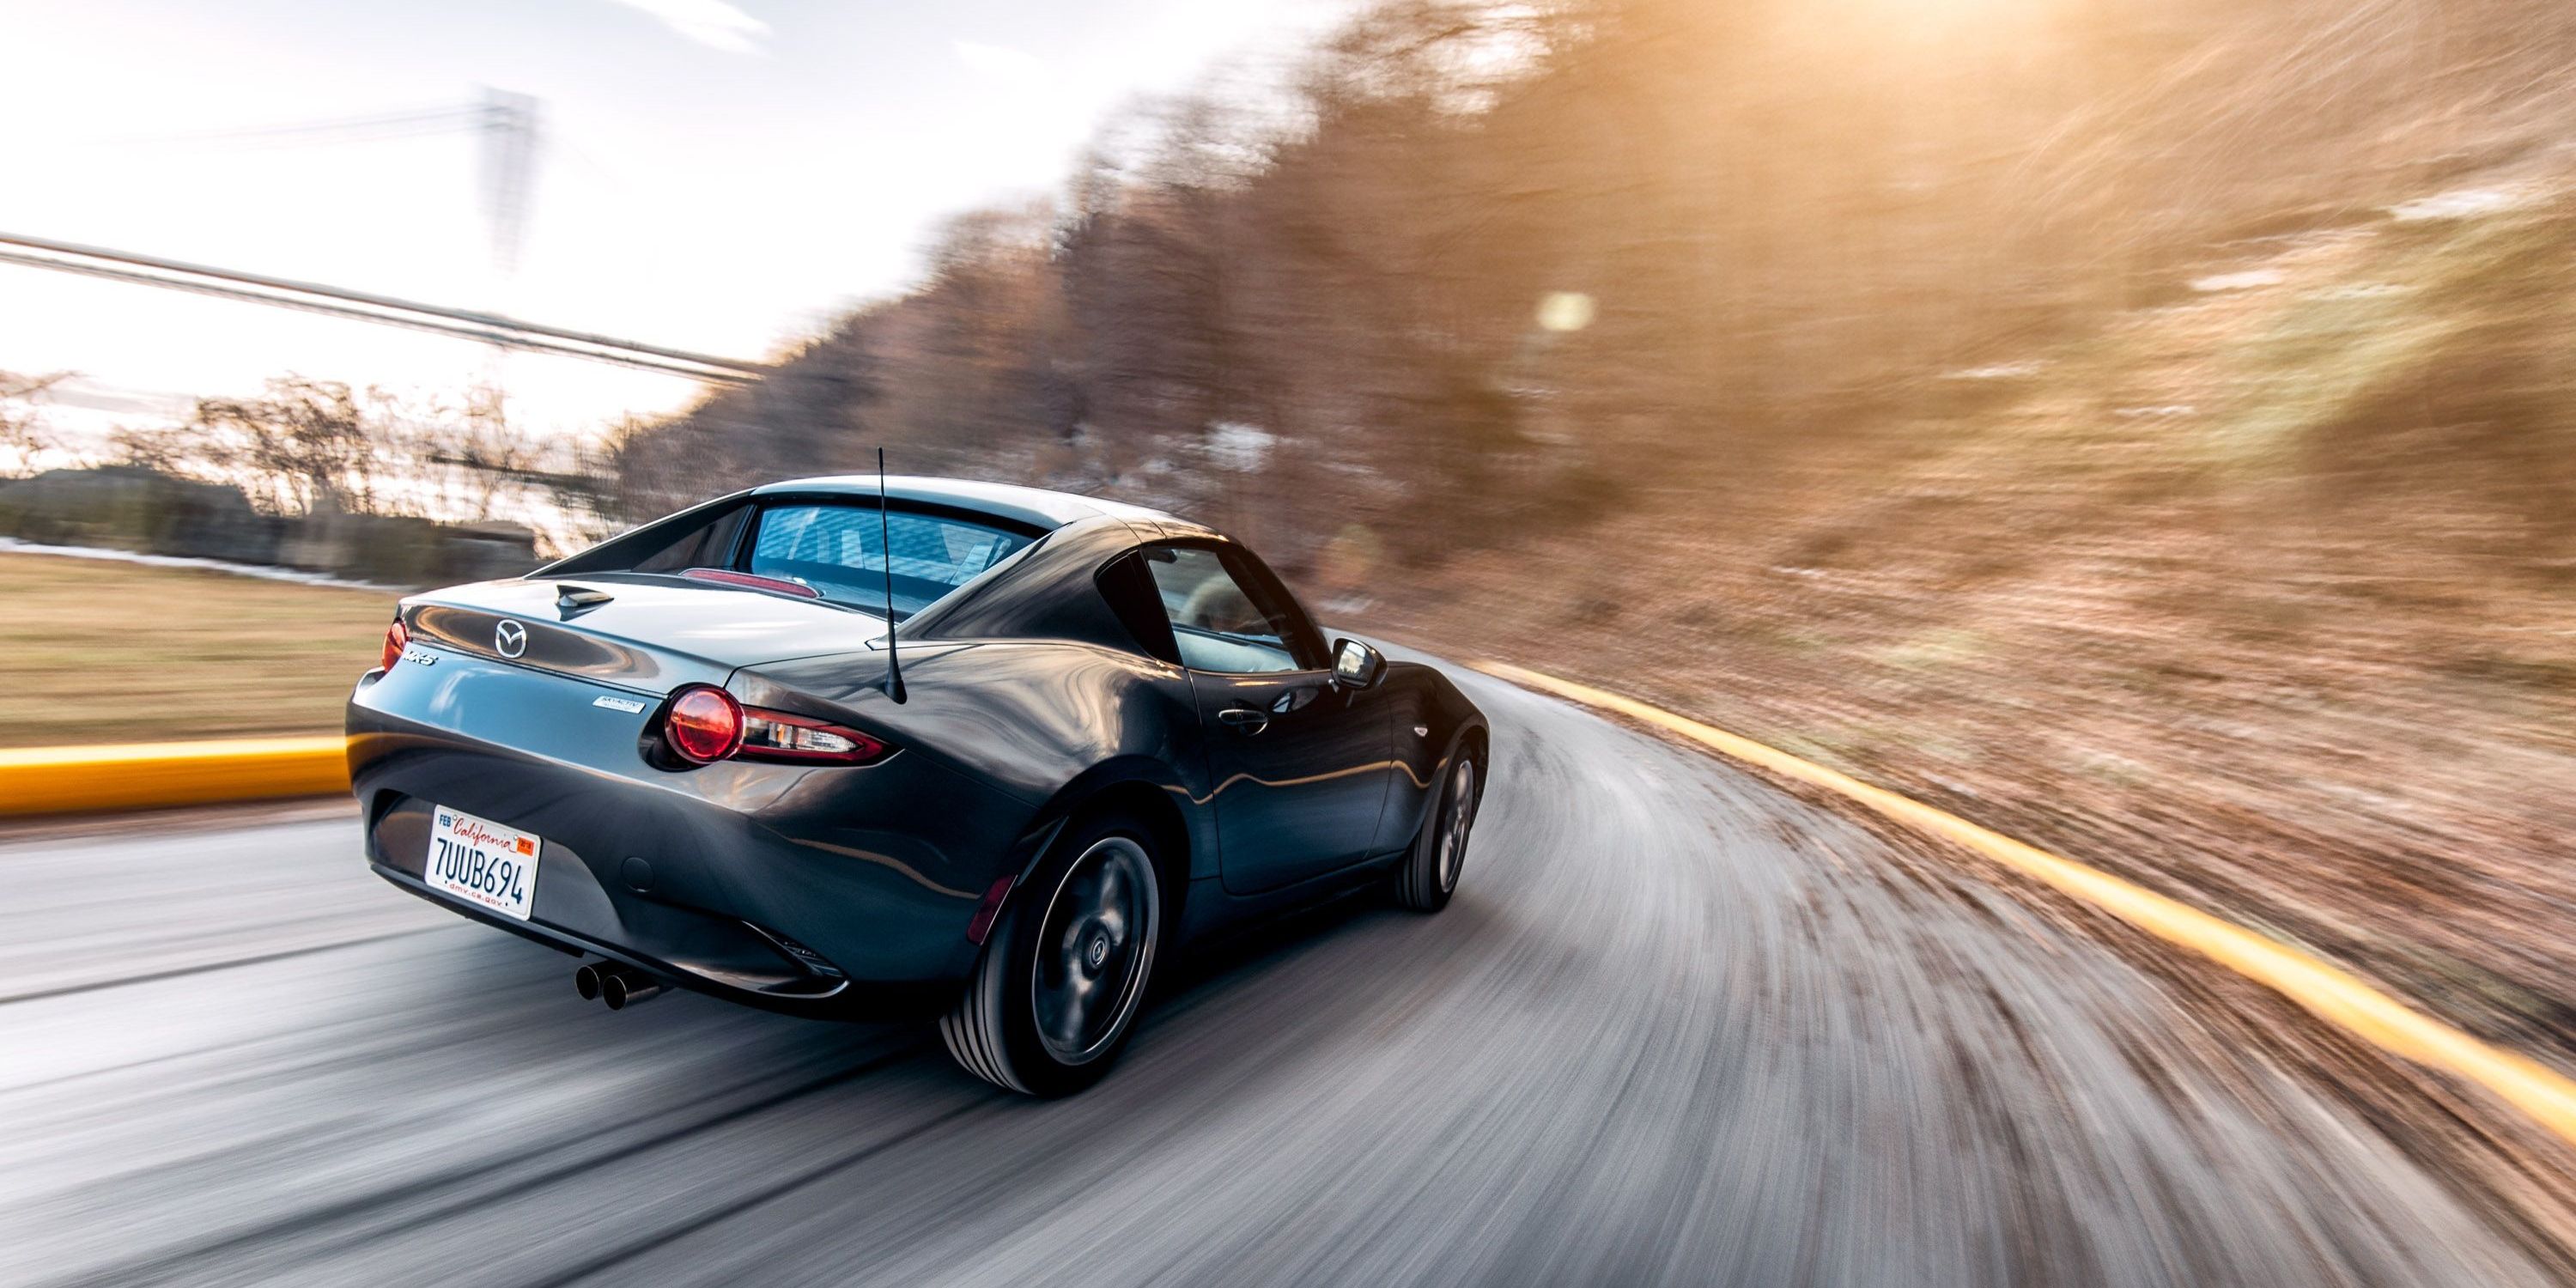 Mazda xin cấp bằng sáng chế cho động cơ mới